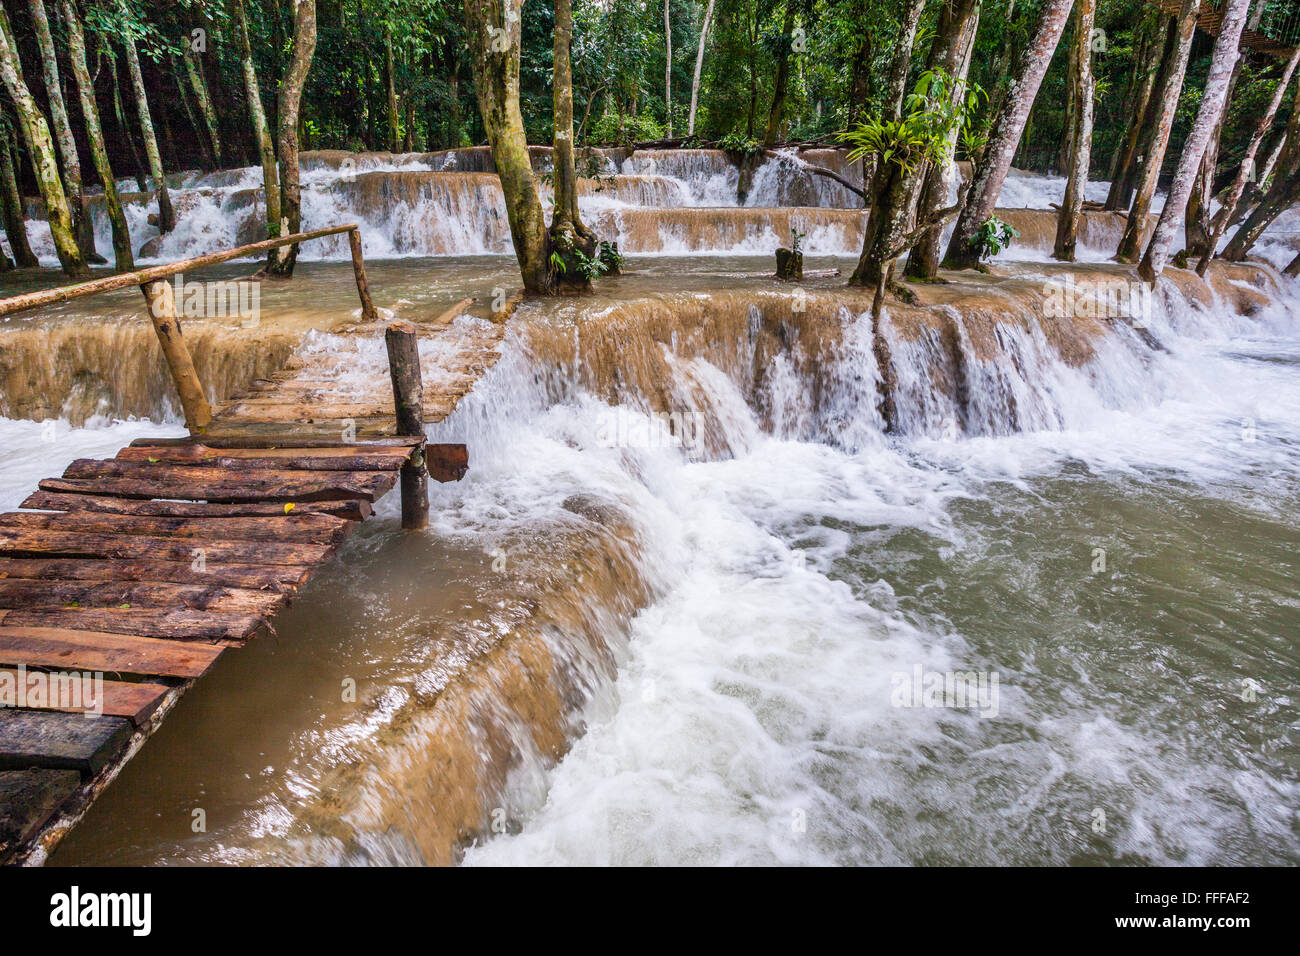 République démocratique populaire du Laos, Luang Prabang Province, Tat Sae en cascade des chutes d'eau plus de formations calcaires Banque D'Images